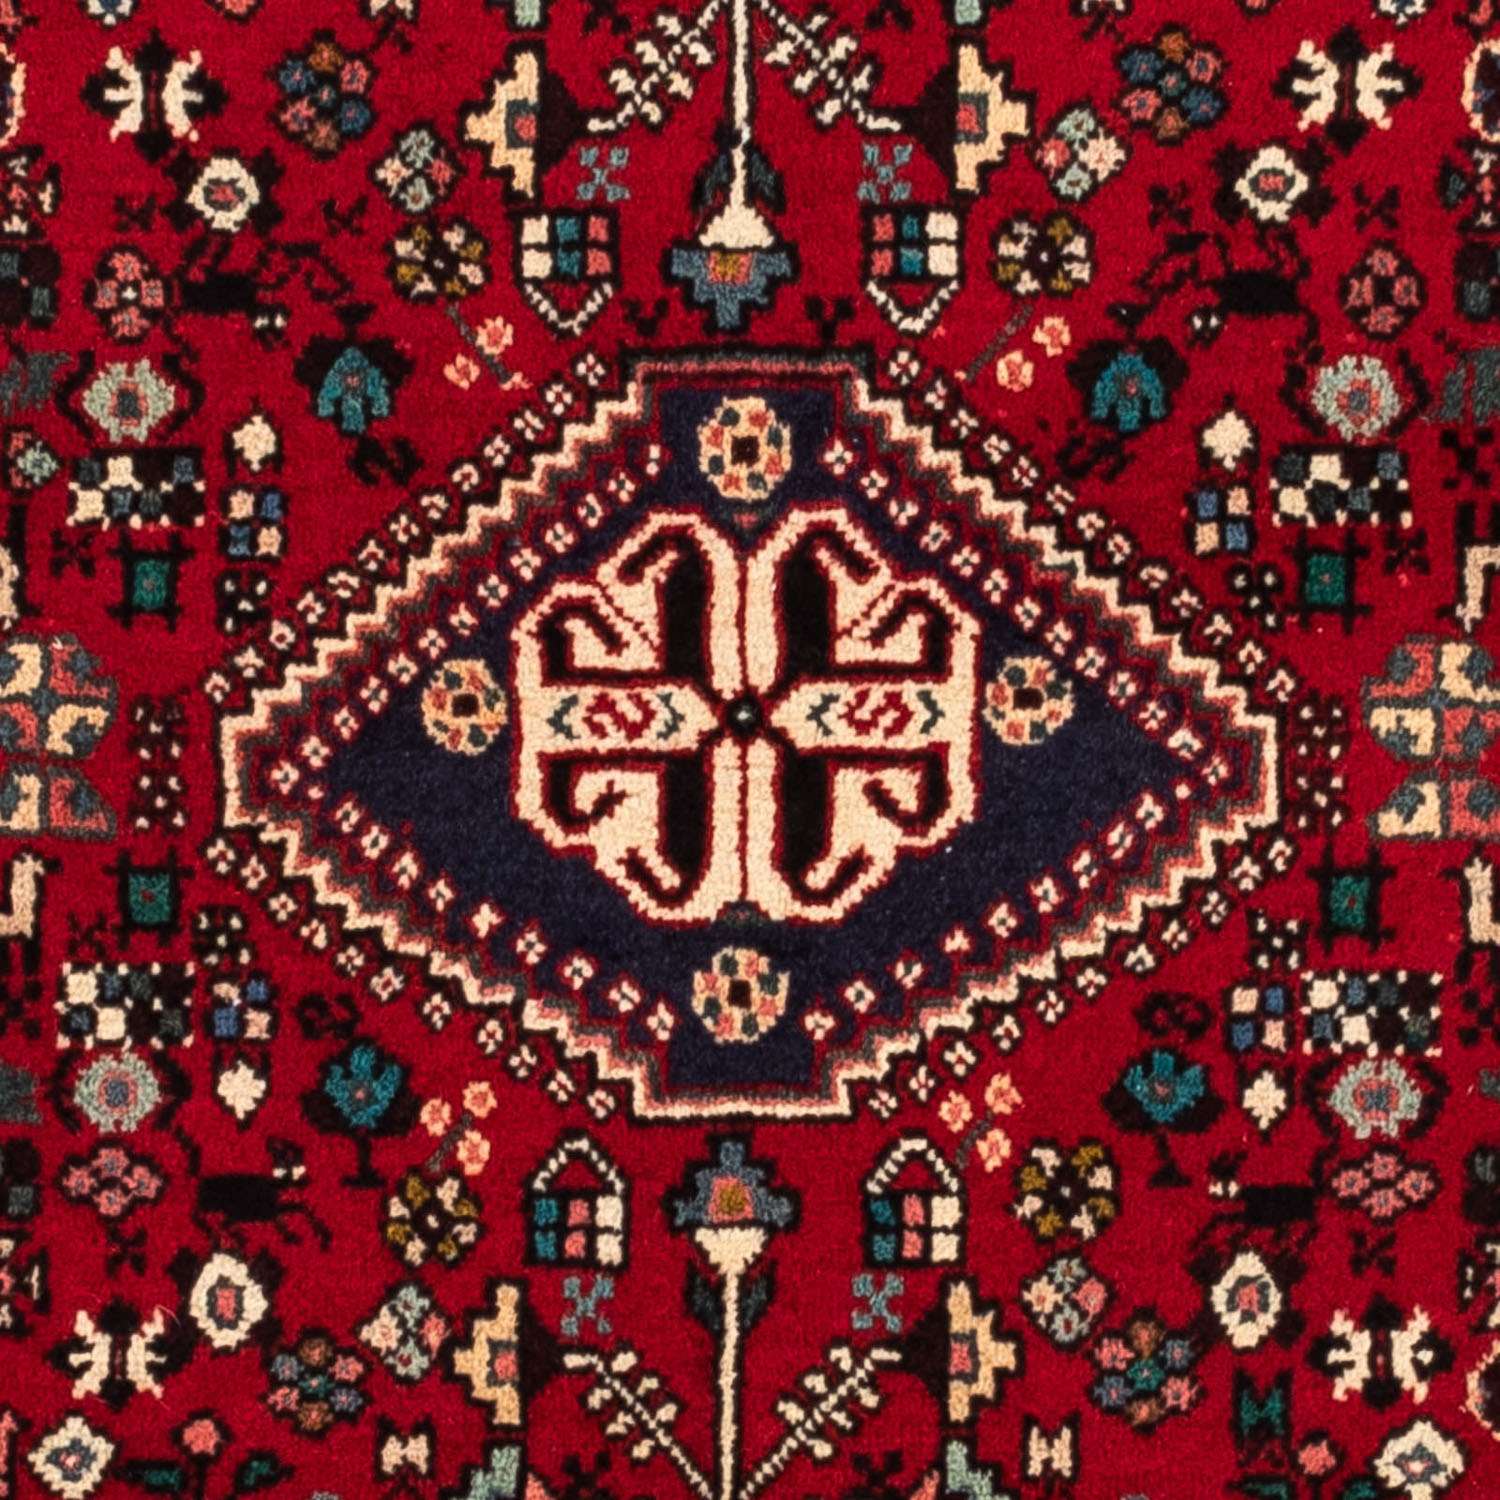 Tapis persan - Nomadic - 154 x 107 cm - rouge foncé